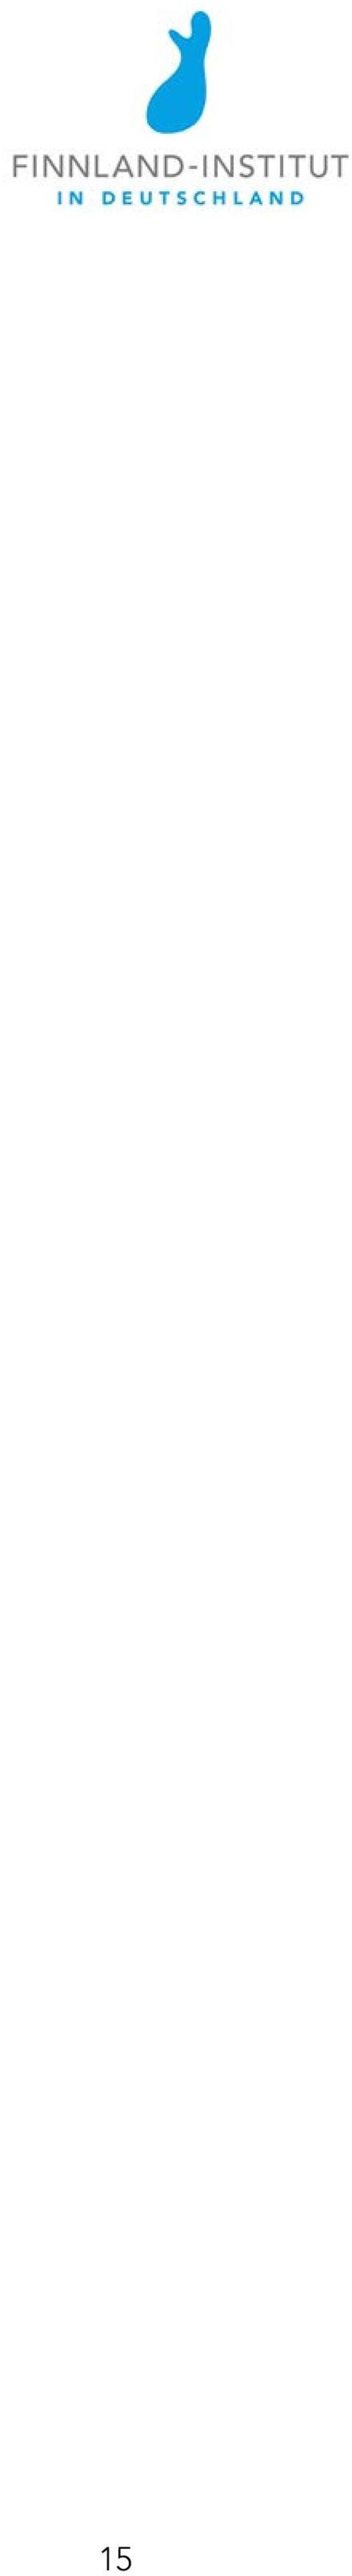 Weil am Rhein, Basel/Vitra Design Museum, 27.9.2014 1.3.2015 5. Illustre Gestalten 7 Finnland. Eiskalt aufgetaut. Darmstadt/Centralstation, 7. 8.2. 6. Die Saunameister. Fotografien von Päivi Eronen.